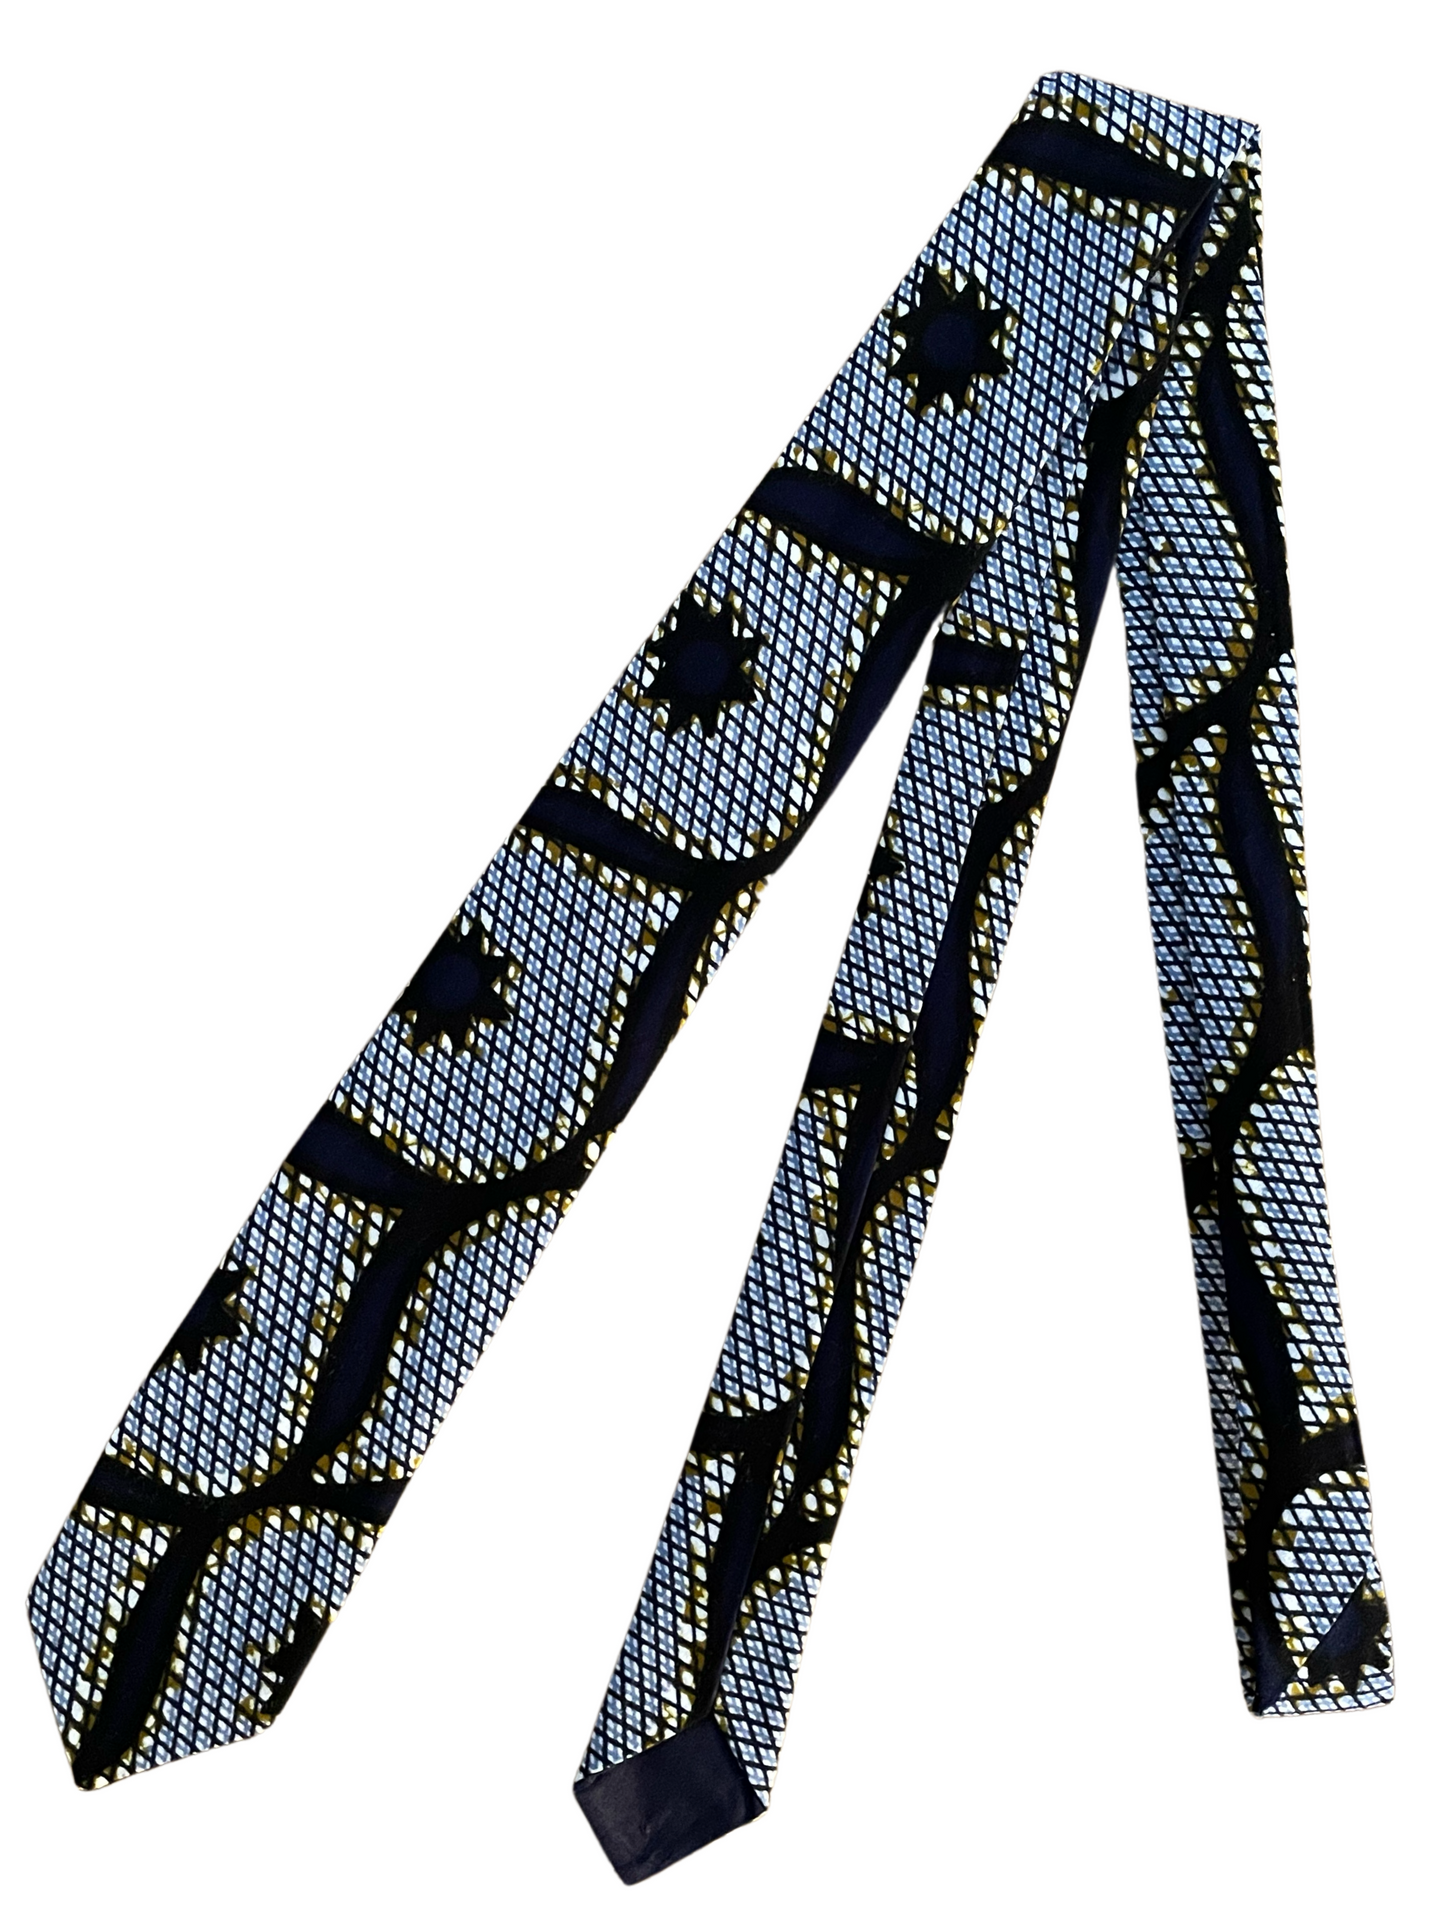 Cravate en wax motifs “Congrès” bleus et jaunes